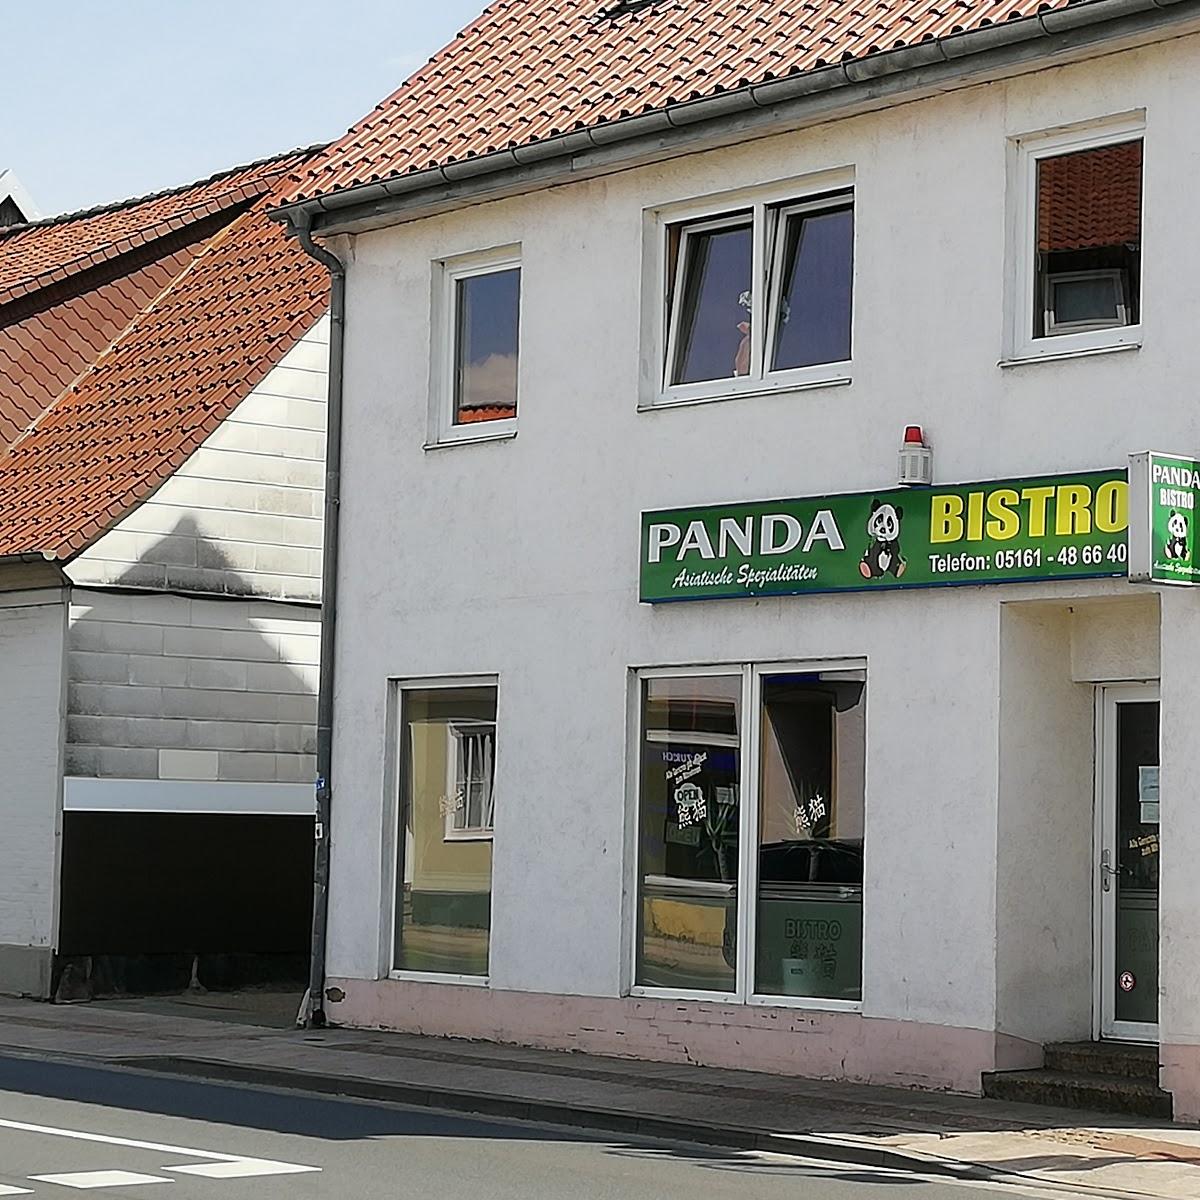 Restaurant "Panda Bistro" in Walsrode